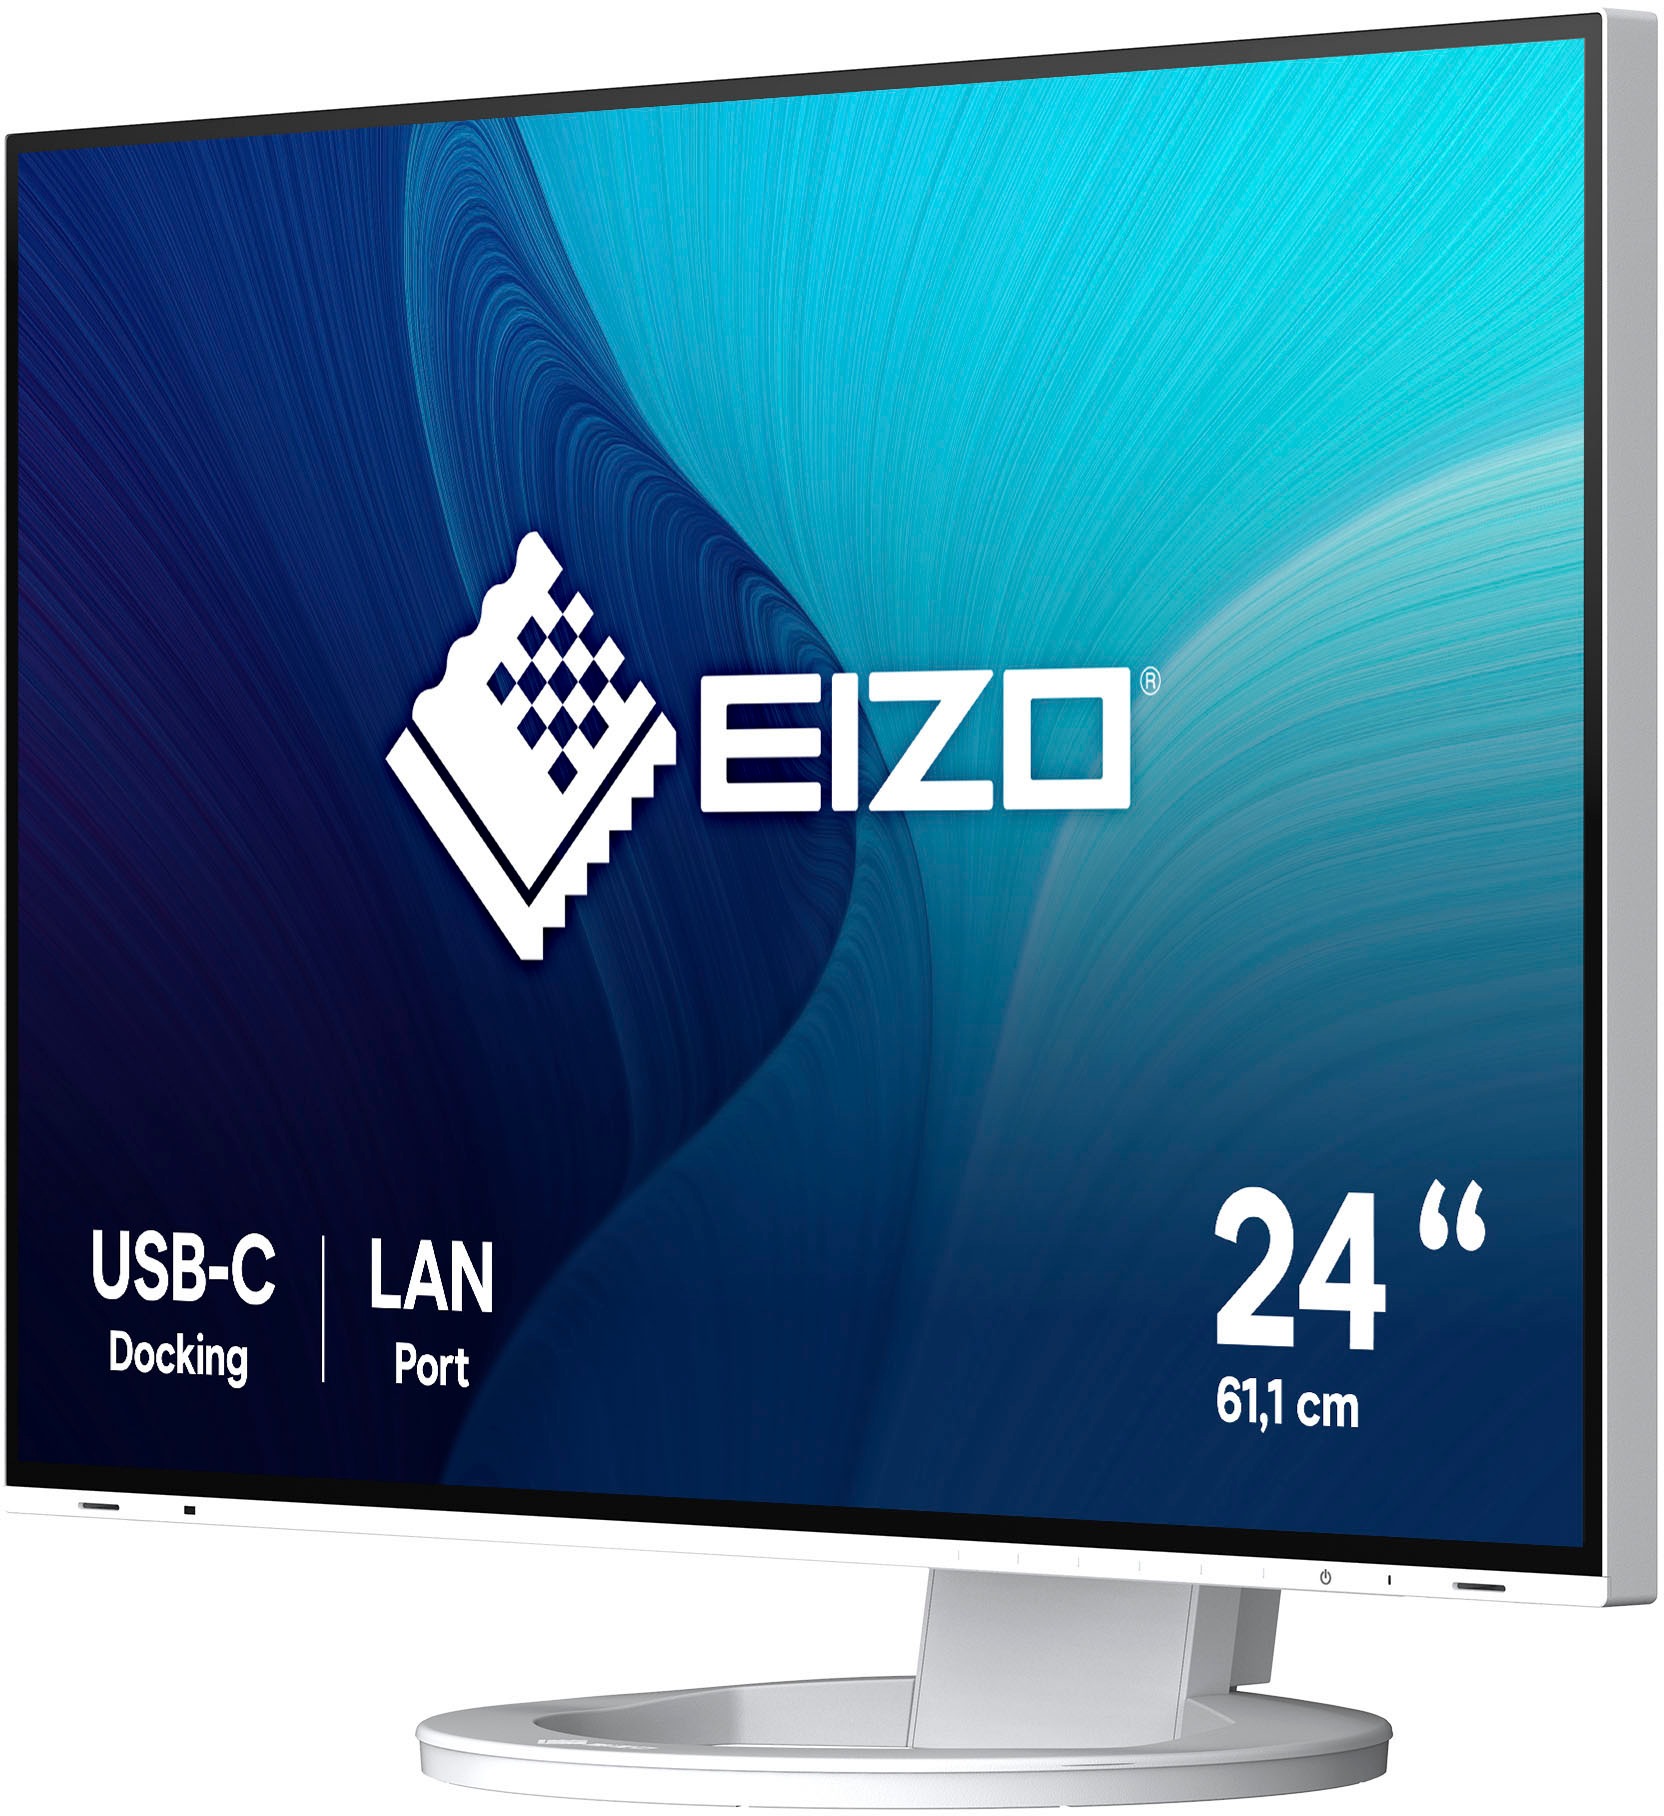 Eizo LED-Monitor »FlexScan EV2495«, 61 cm/24 Zoll, 1920 x 1200 px, WUXGA, 5 ms Reaktionszeit, 60 Hz